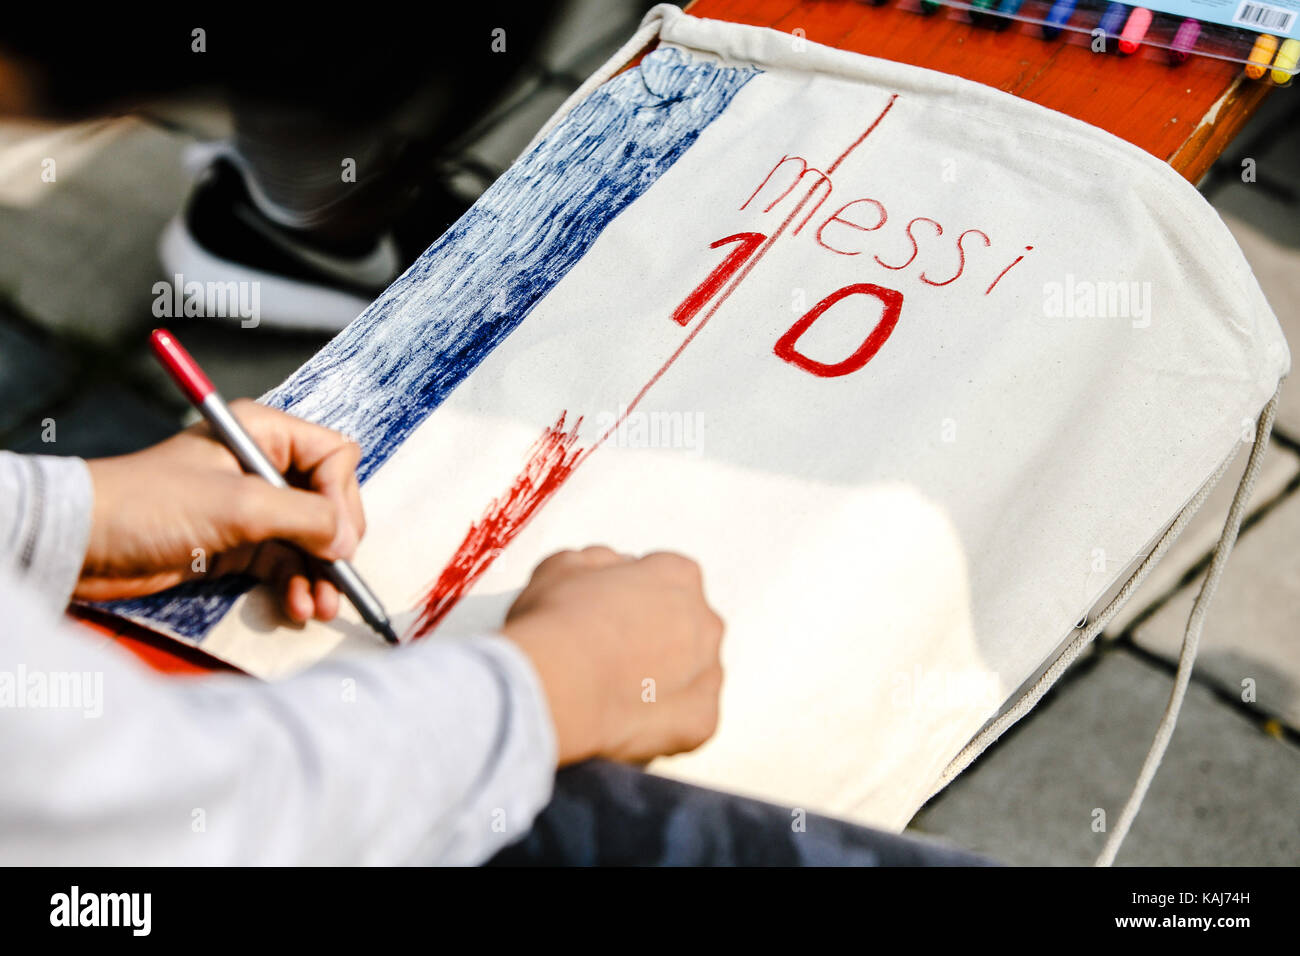 Ein Kind malt das Jersey der Fußballer Lionel Messi auf eine Sporttasche mit einem Marker Stockfoto